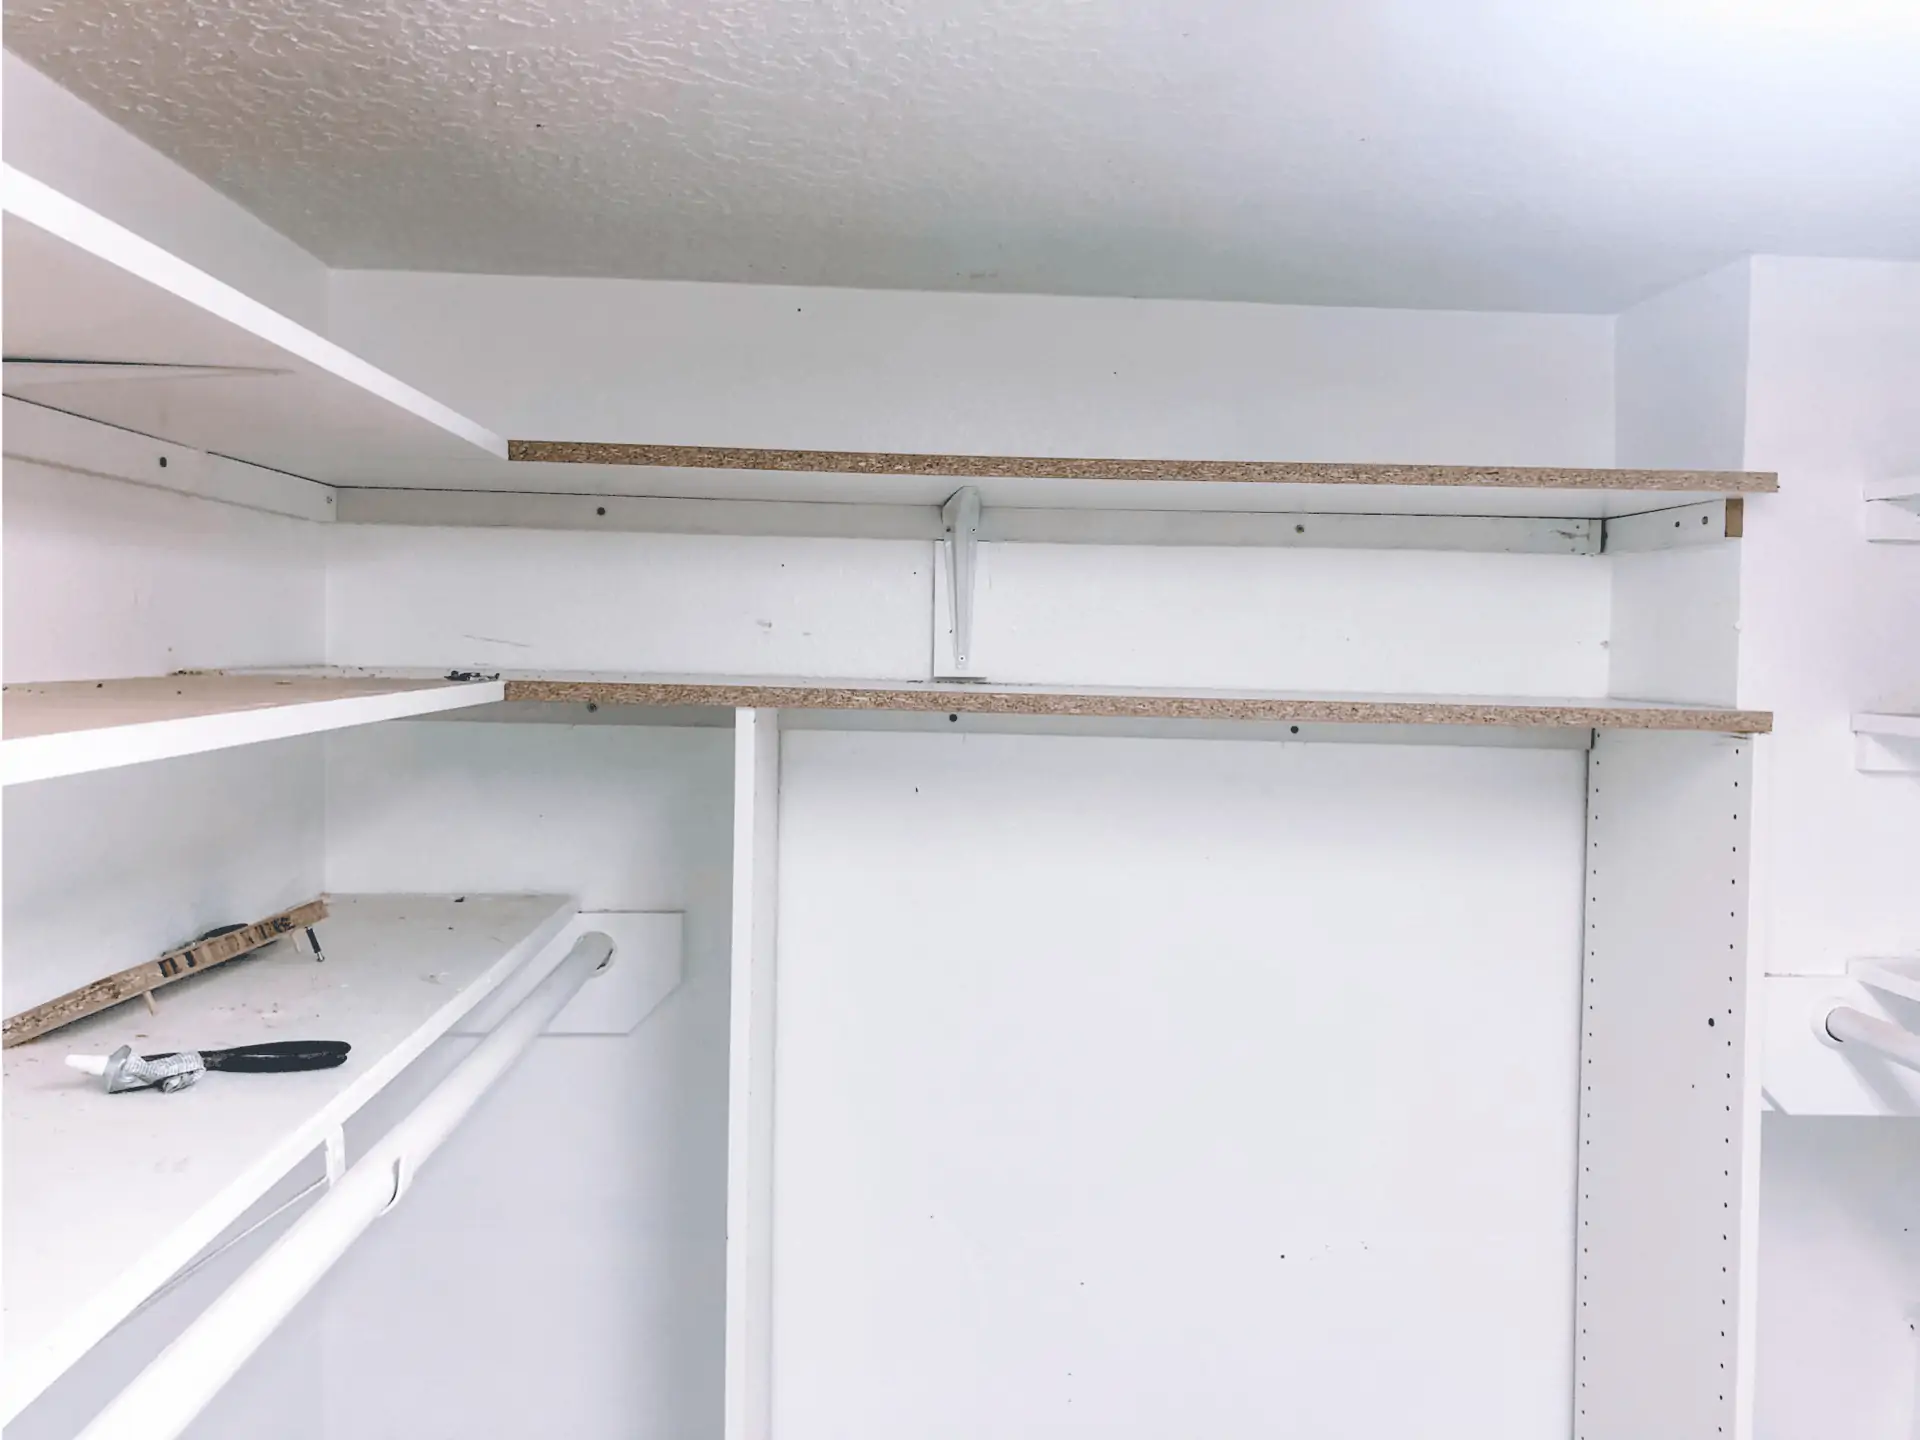 How To Install Closet Shelf And Rod